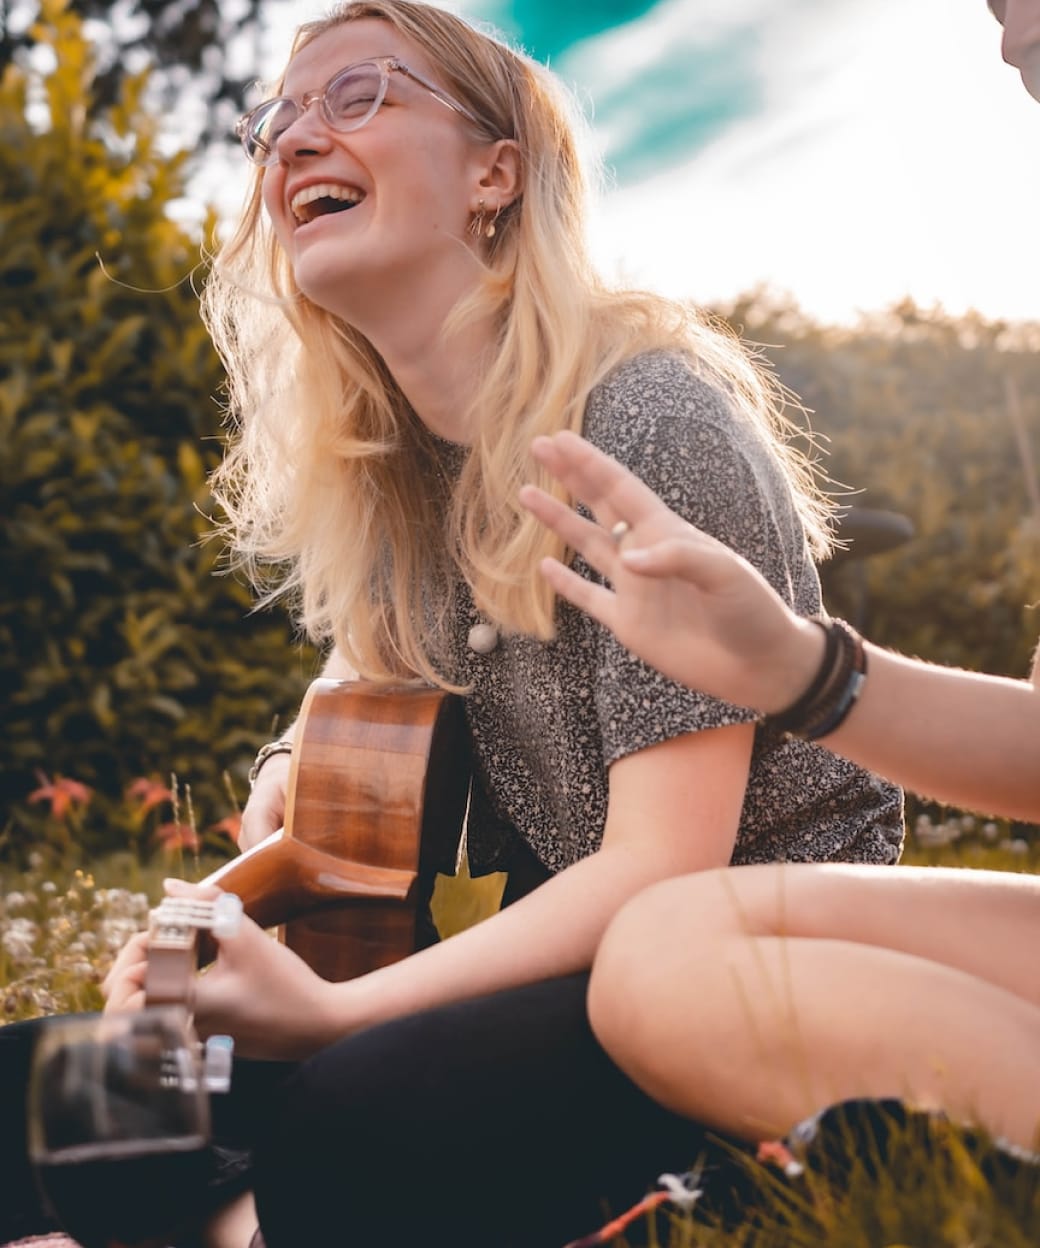 woman smiling playing guitar